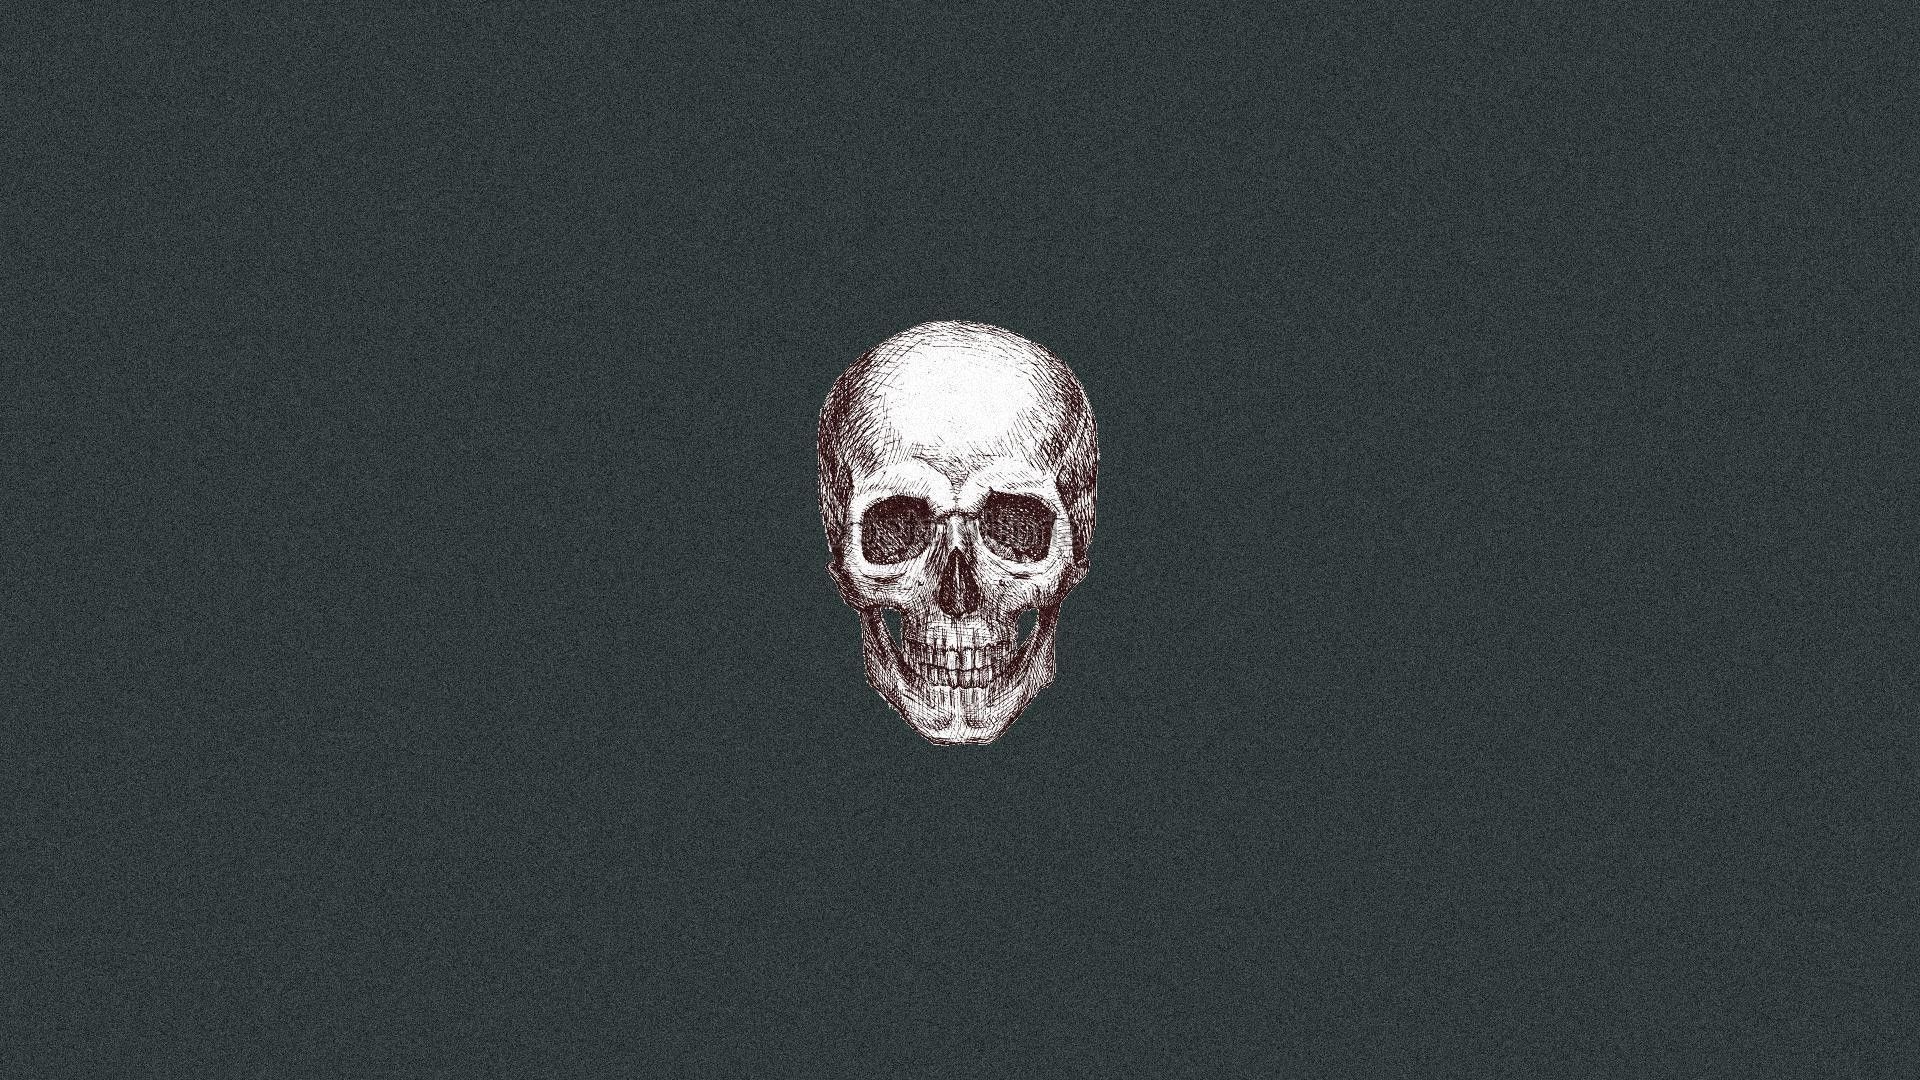 A skull on a black background - Skeleton